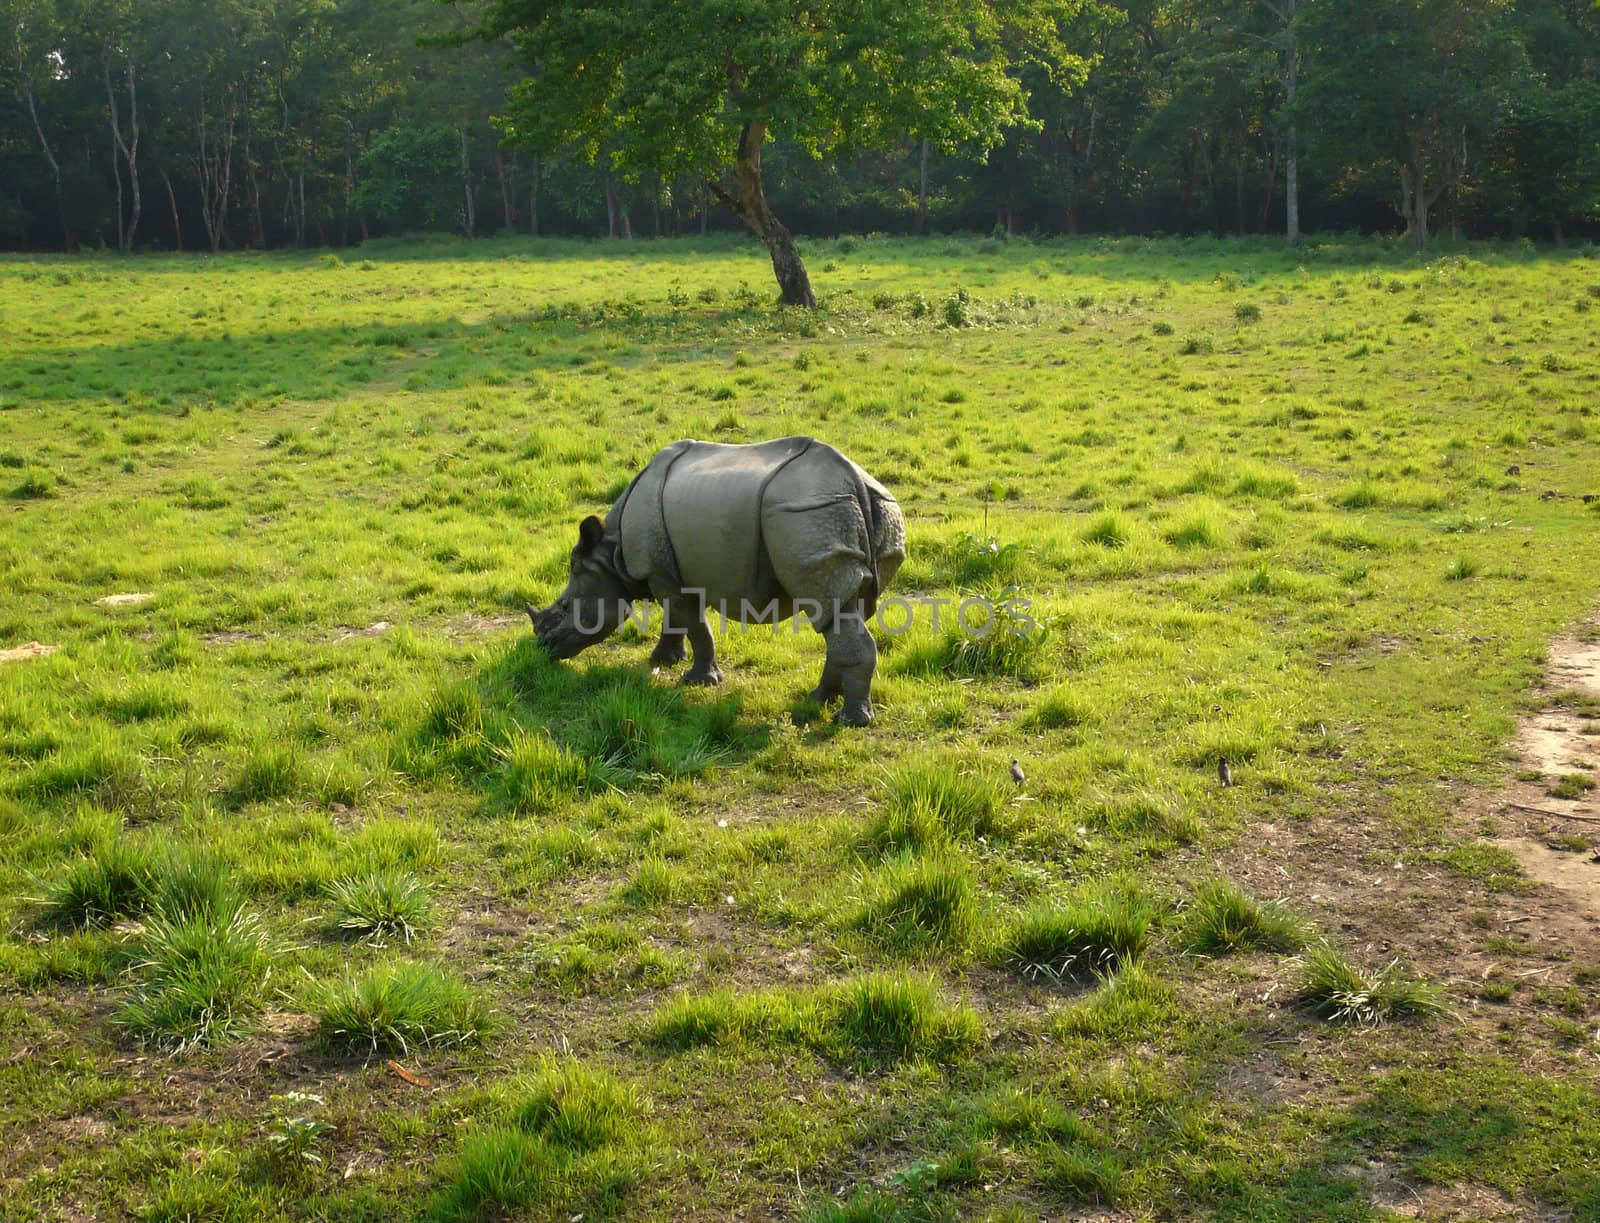 Wild rhino grazing in evening light by pljvv